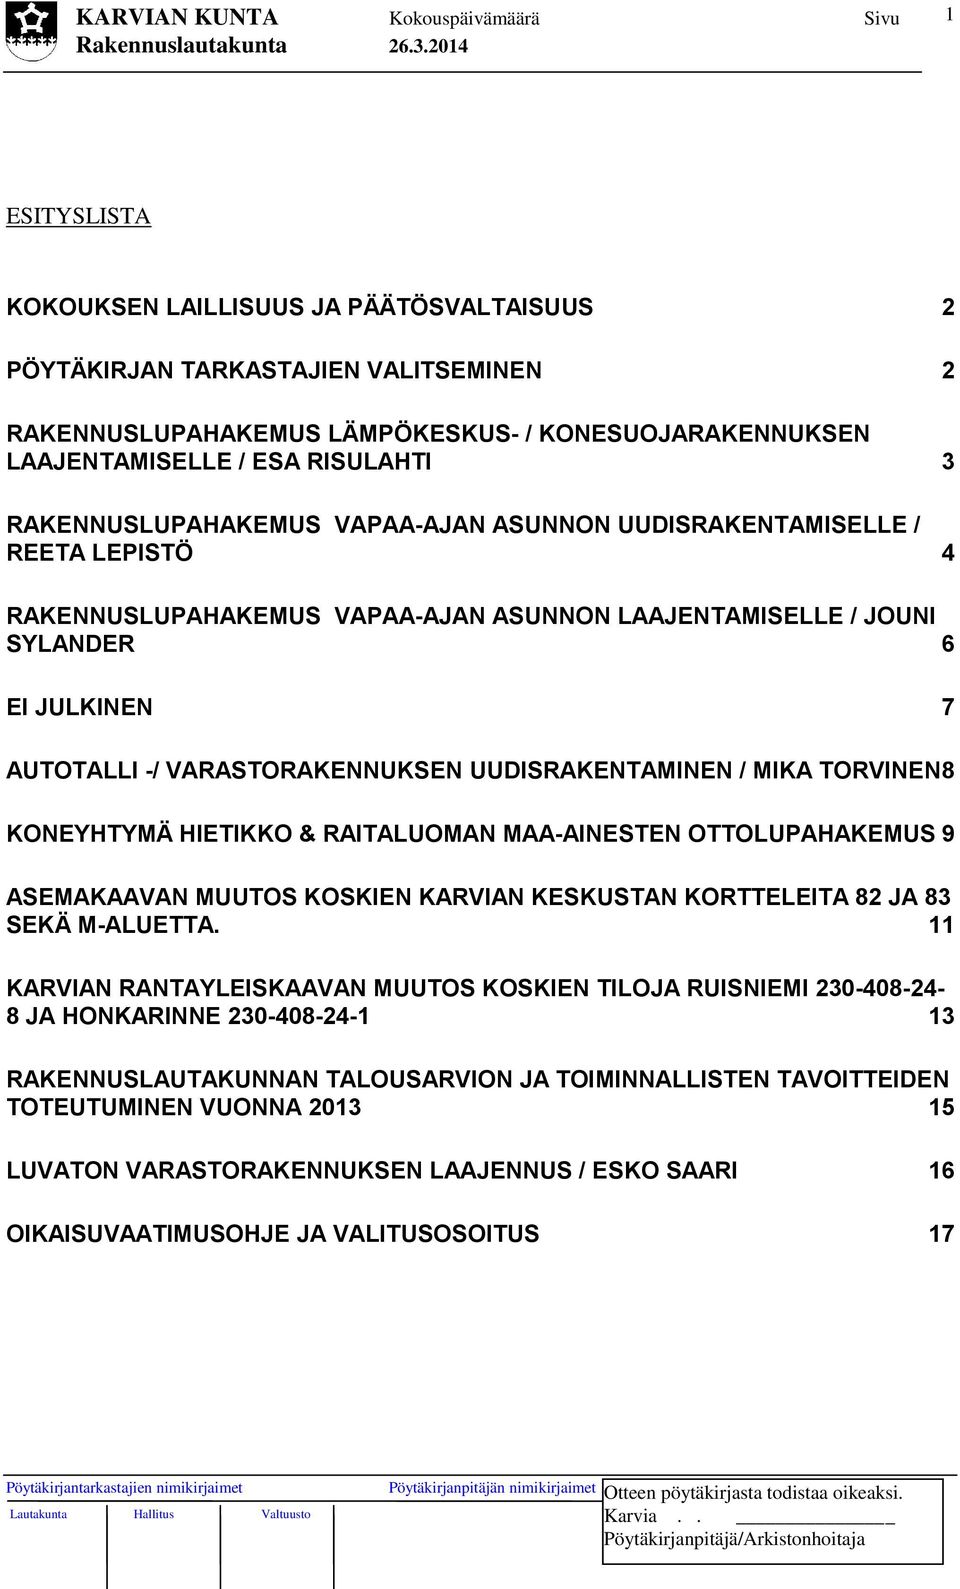 UUDISRAKENTAMINEN / MIKA TORVINEN 8 KONEYHTYMÄ HIETIKKO & RAITALUOMAN MAA-AINESTEN OTTOLUPAHAKEMUS 9 ASEMAKAAVAN MUUTOS KOSKIEN KARVIAN KESKUSTAN KORTTELEITA 82 JA 83 SEKÄ M-ALUETTA.